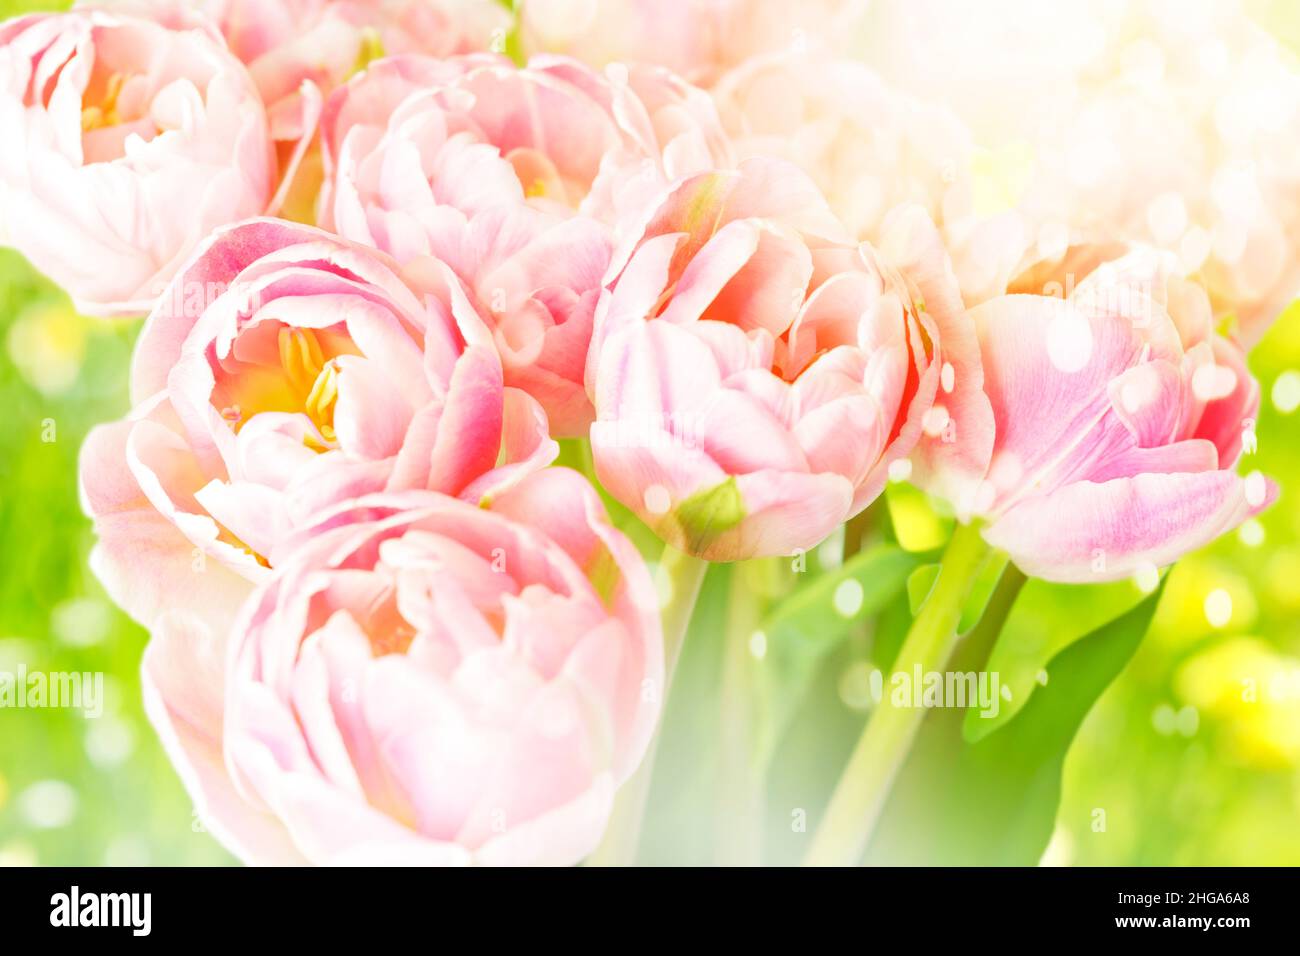 Flores de tulipán rosa sobre fondo verde con efecto de destellos claros, plantillas nostálgicas de tarjetas de felicitación para cualquier celebración en primavera. Foto de stock